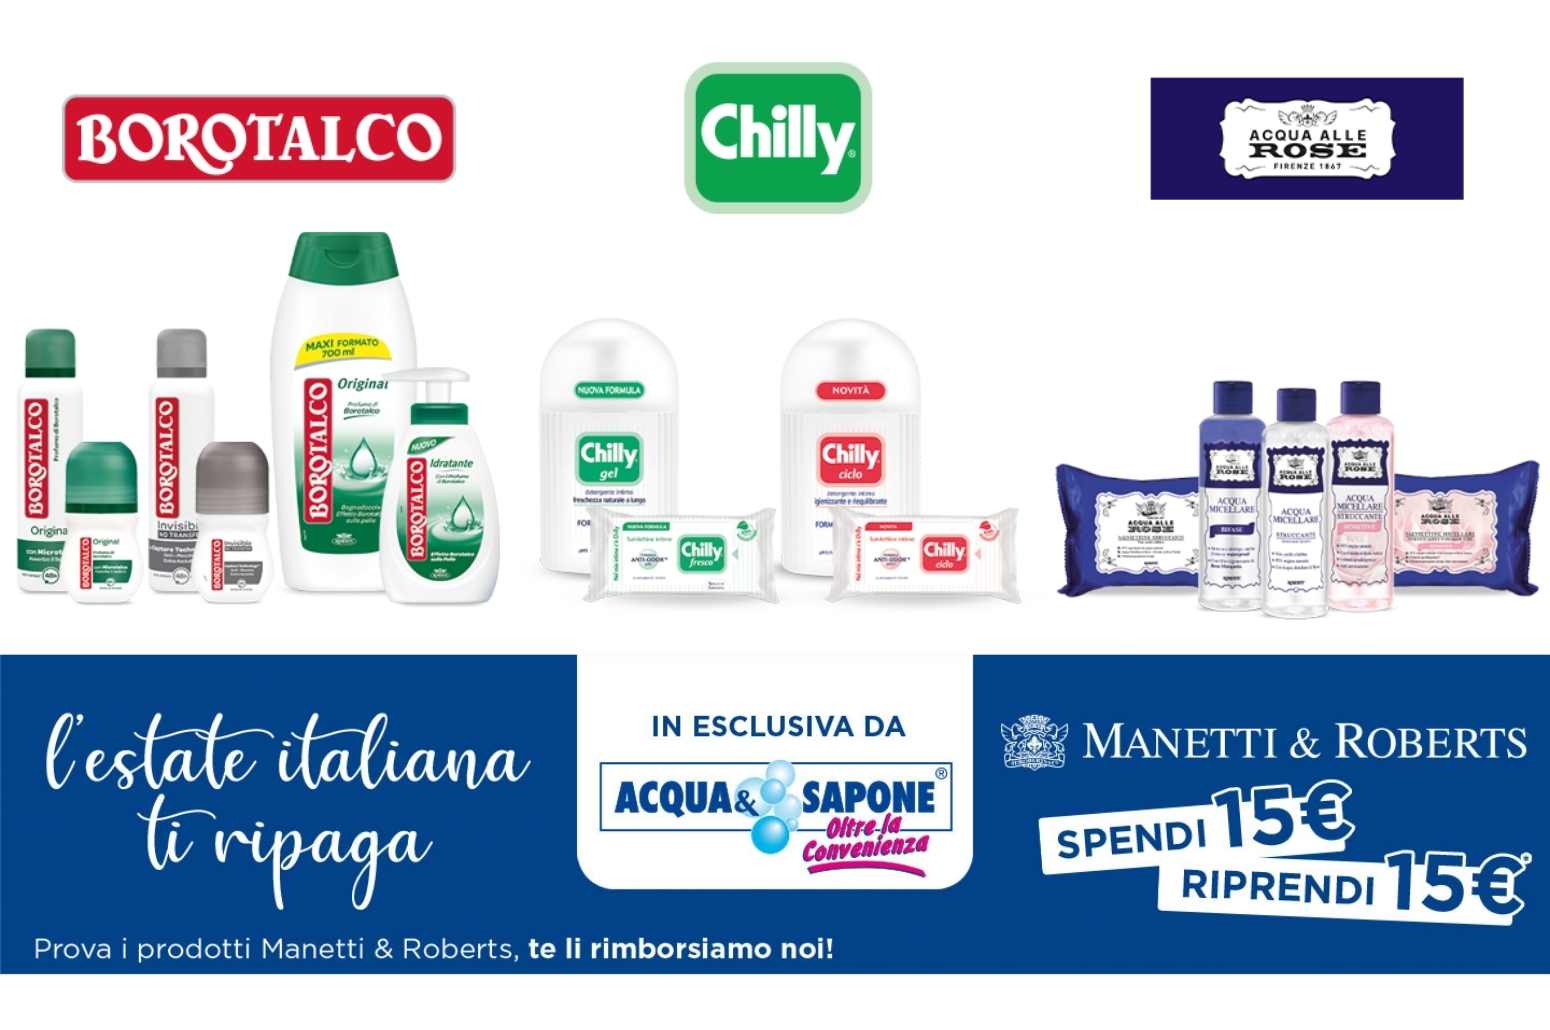 “L’estate Italiana ti ripaga” ottieni gratis con cashback 15€ di prodotti Chillly, Borotalco e Acqua alle rose.